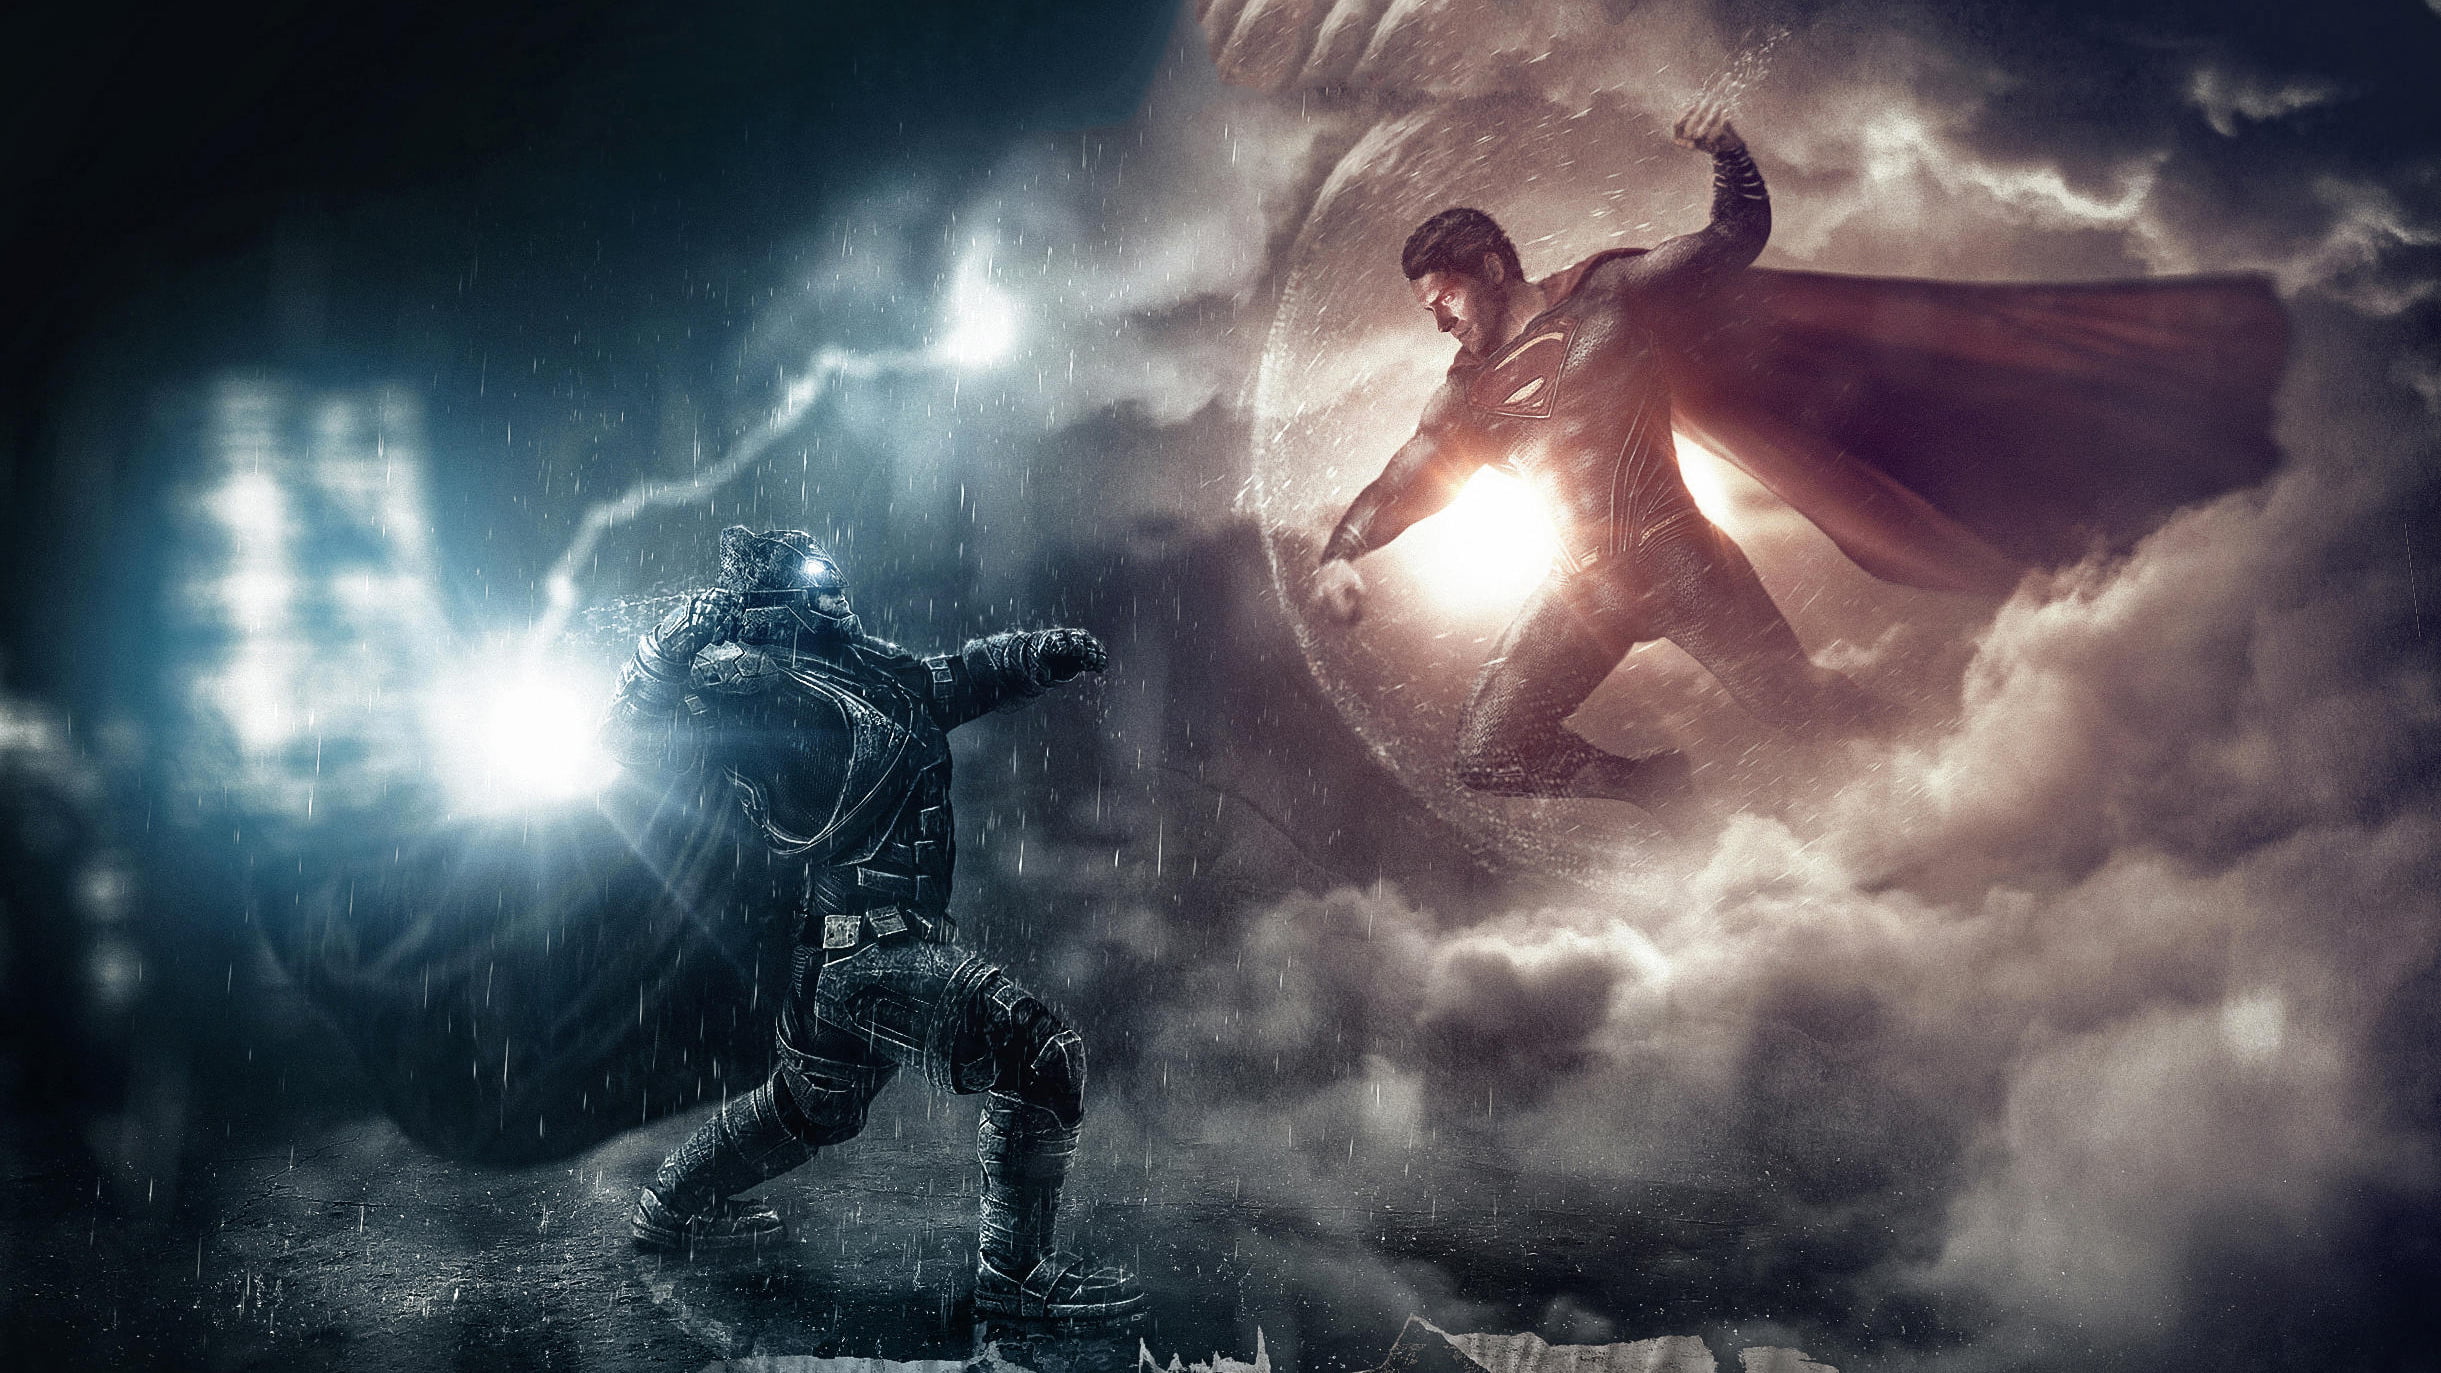 Superman, Batman v Superman: Dawn of Justice